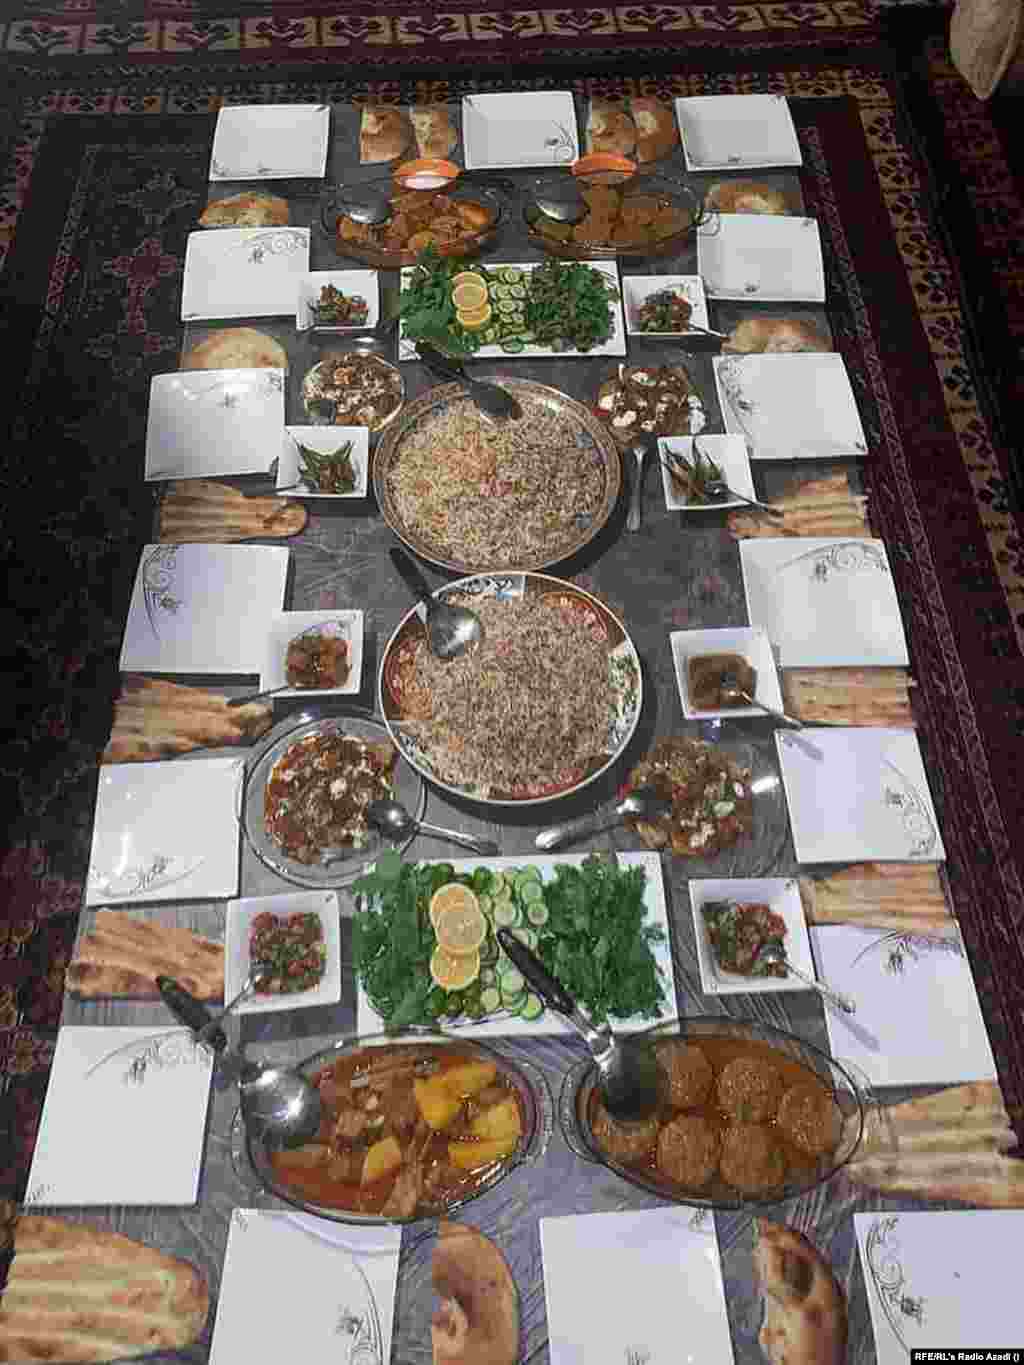 По словам Хасибуллы, до прихода к власти талибов его семья регулярно покупала мясо, свежие овощи и фрукты. На этом фото, по словам Хасибуллы, снят его обед год назад